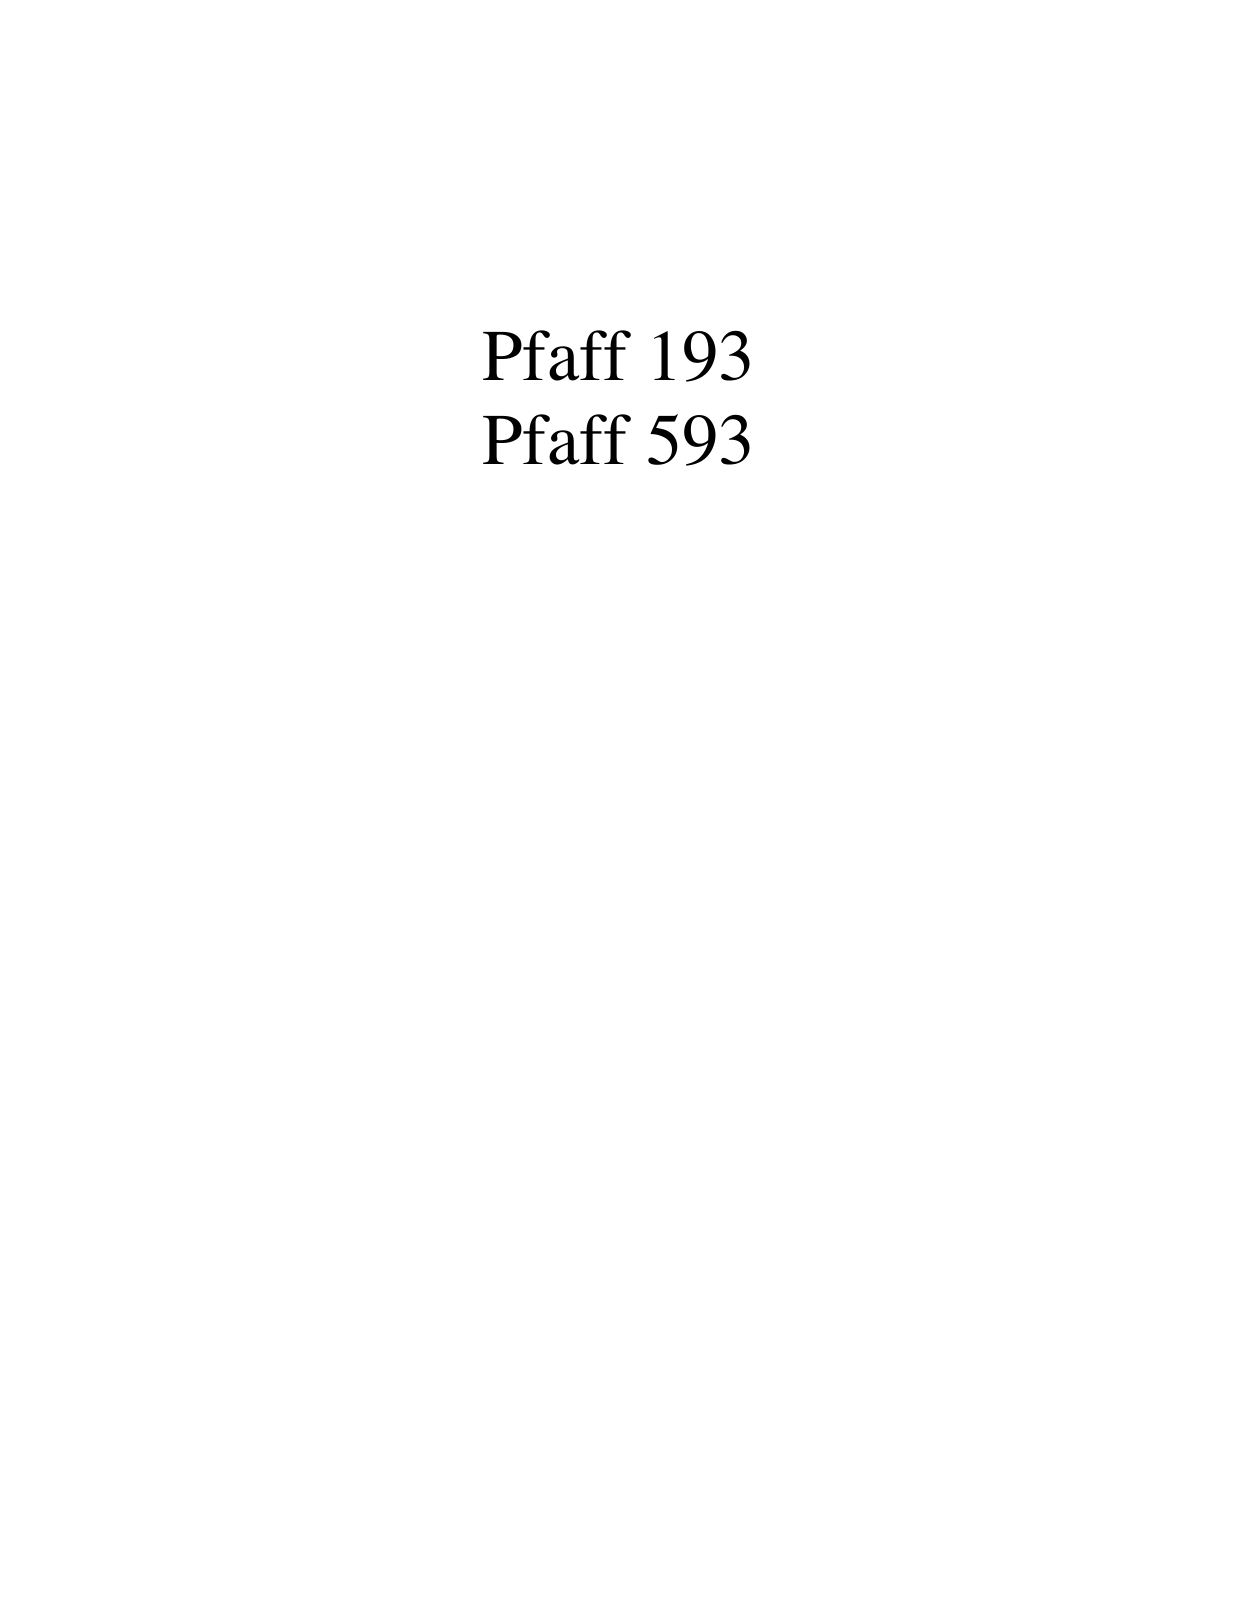 PFAFF 193, 543, 593 Parts List